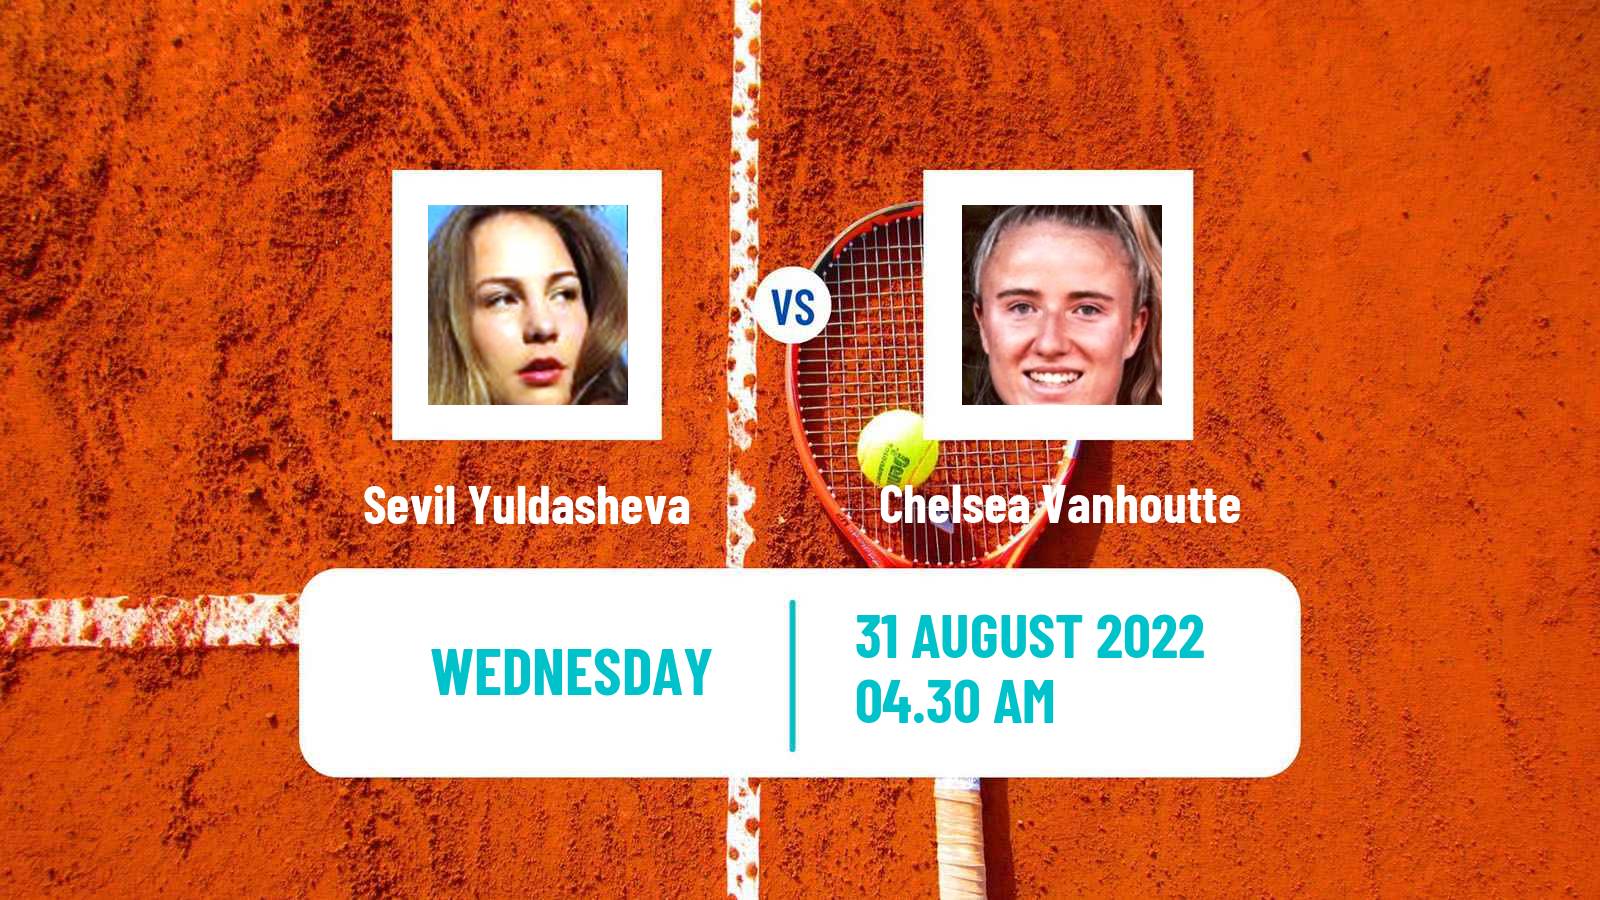 Tennis ITF Tournaments Sevil Yuldasheva - Chelsea Vanhoutte